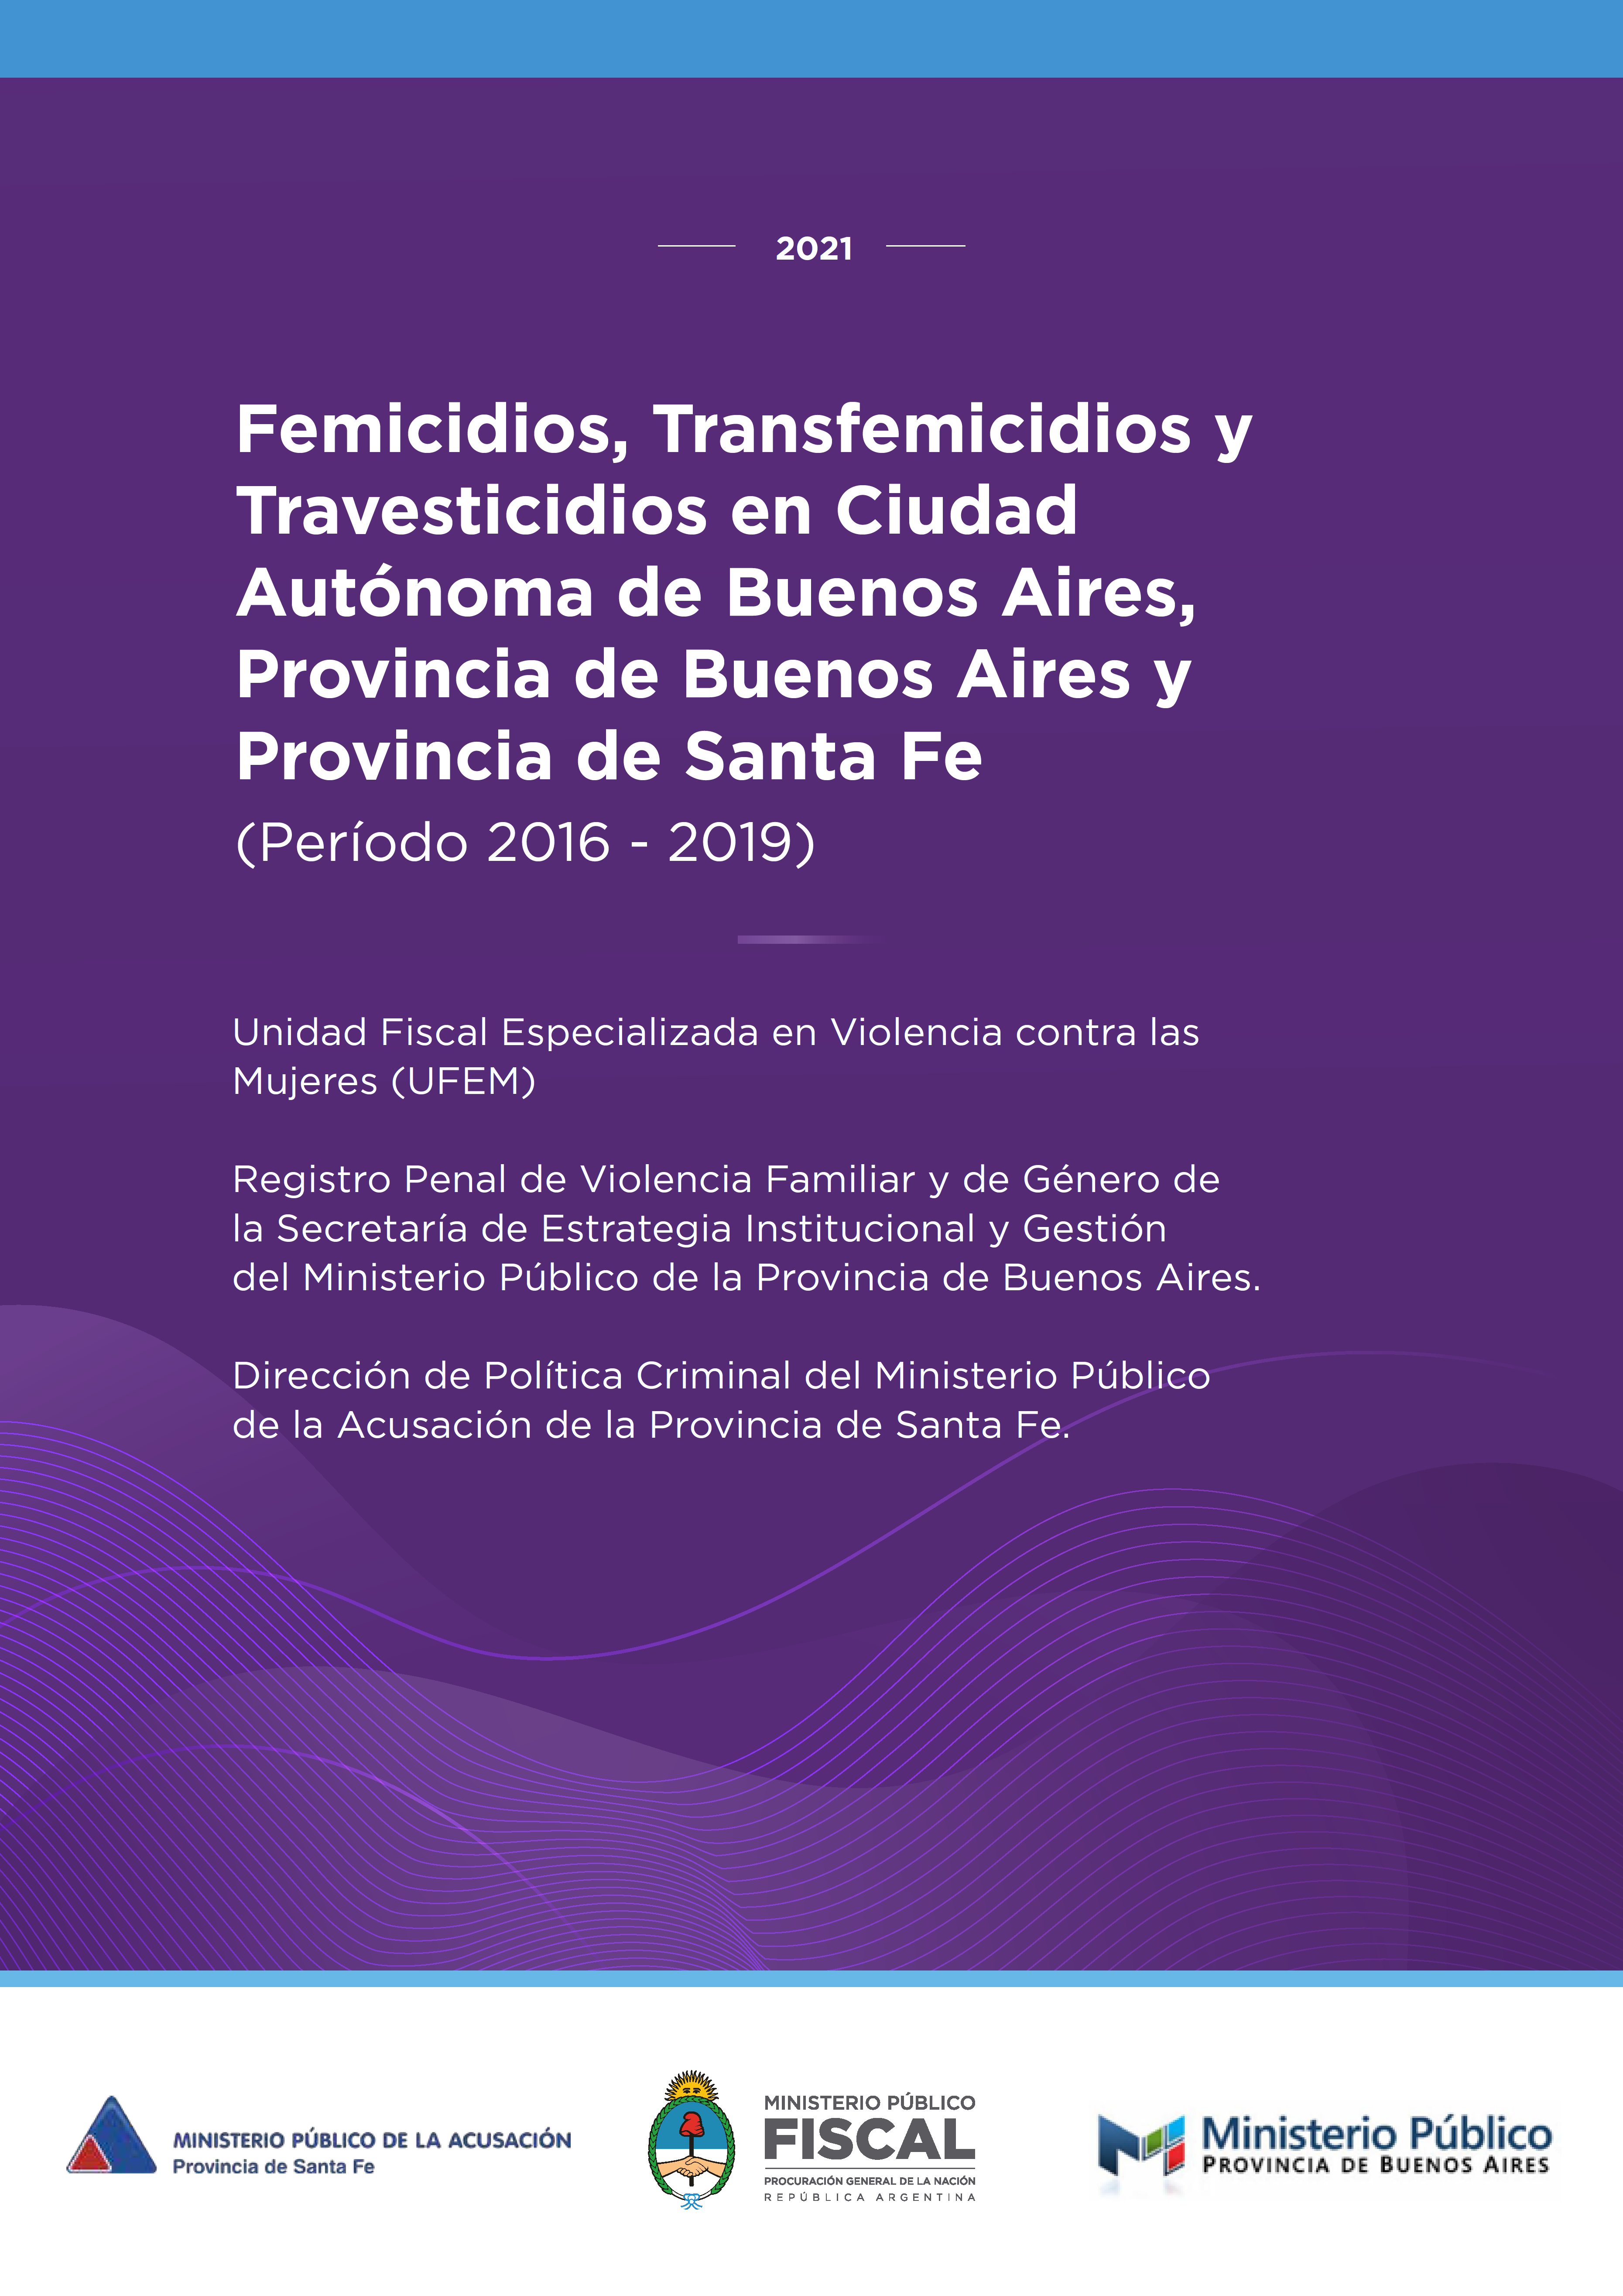 Femicidios, Transfemicidios y Travesticidios en Ciudad Autónoma de Buenos Aires, Provincia de Buenos Aires y Provincia de Santa Fe (Período 2016 - 2019)